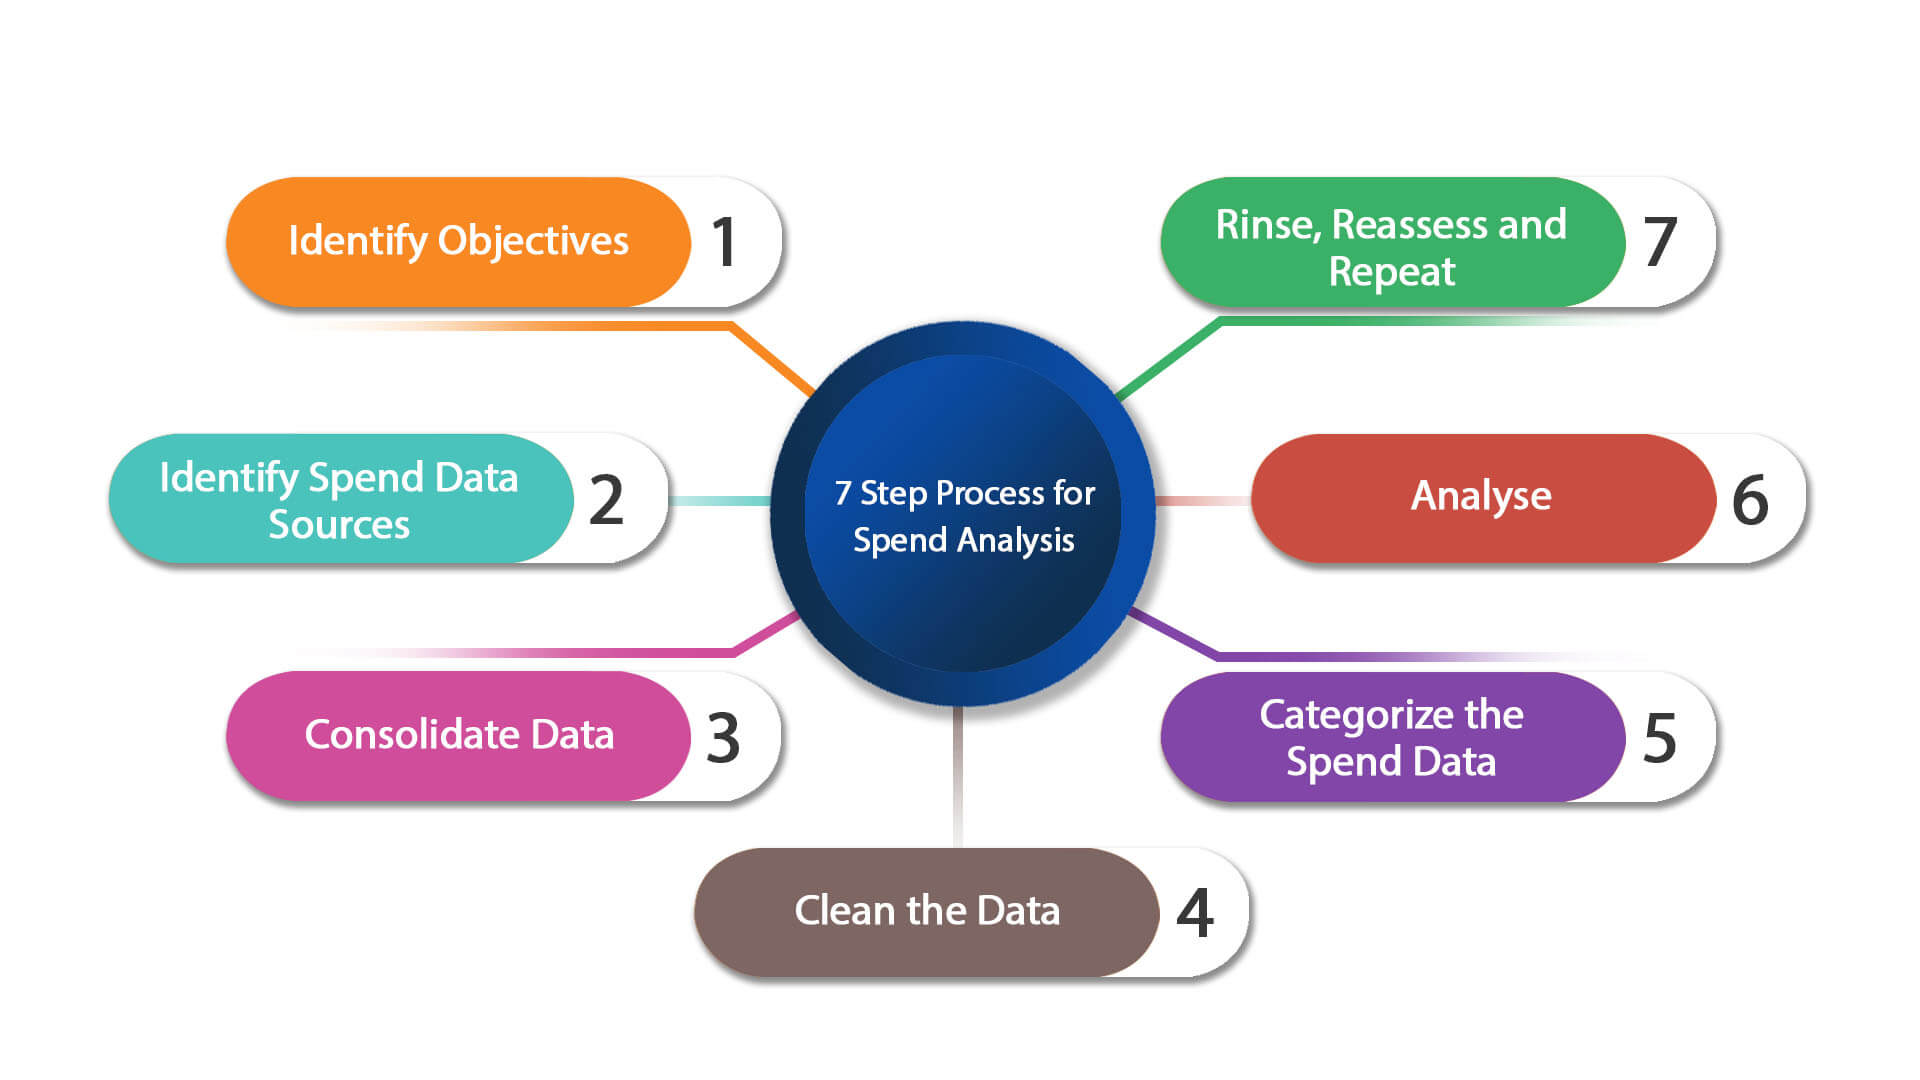 spend-analysis-7-step-process-image